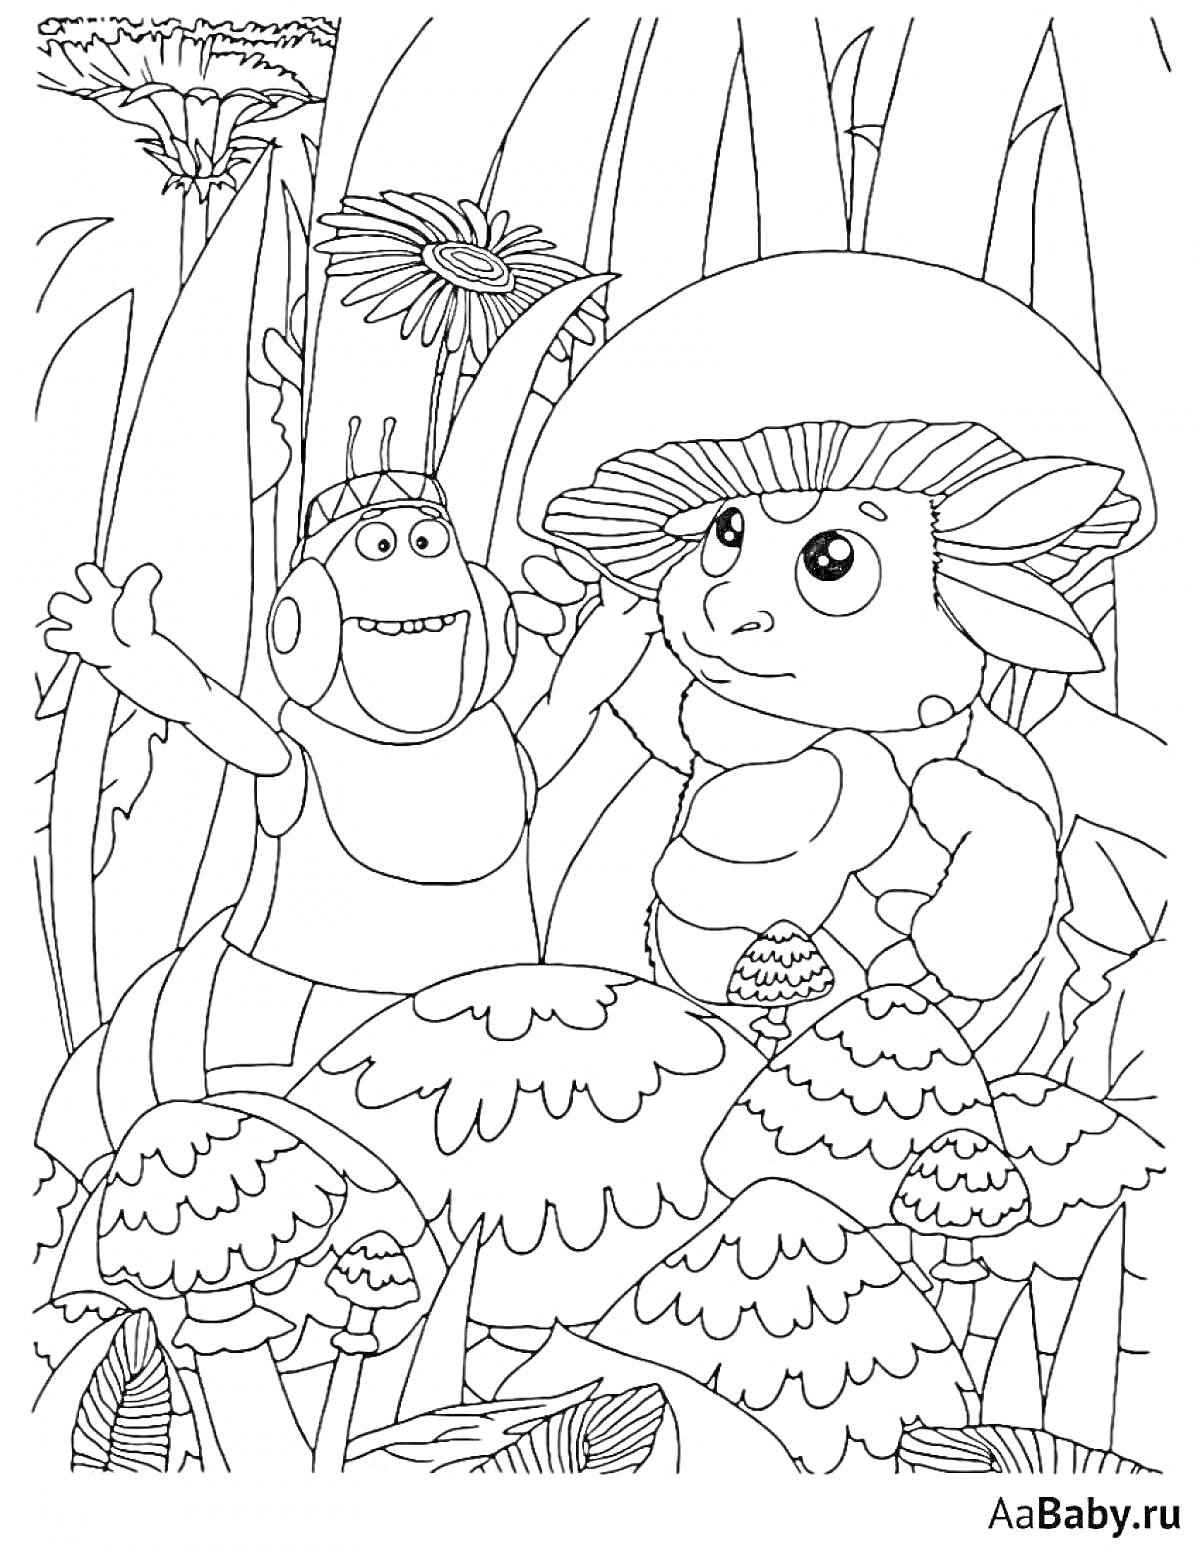 Раскраска Лунтик и его друг среди грибов и больших цветов